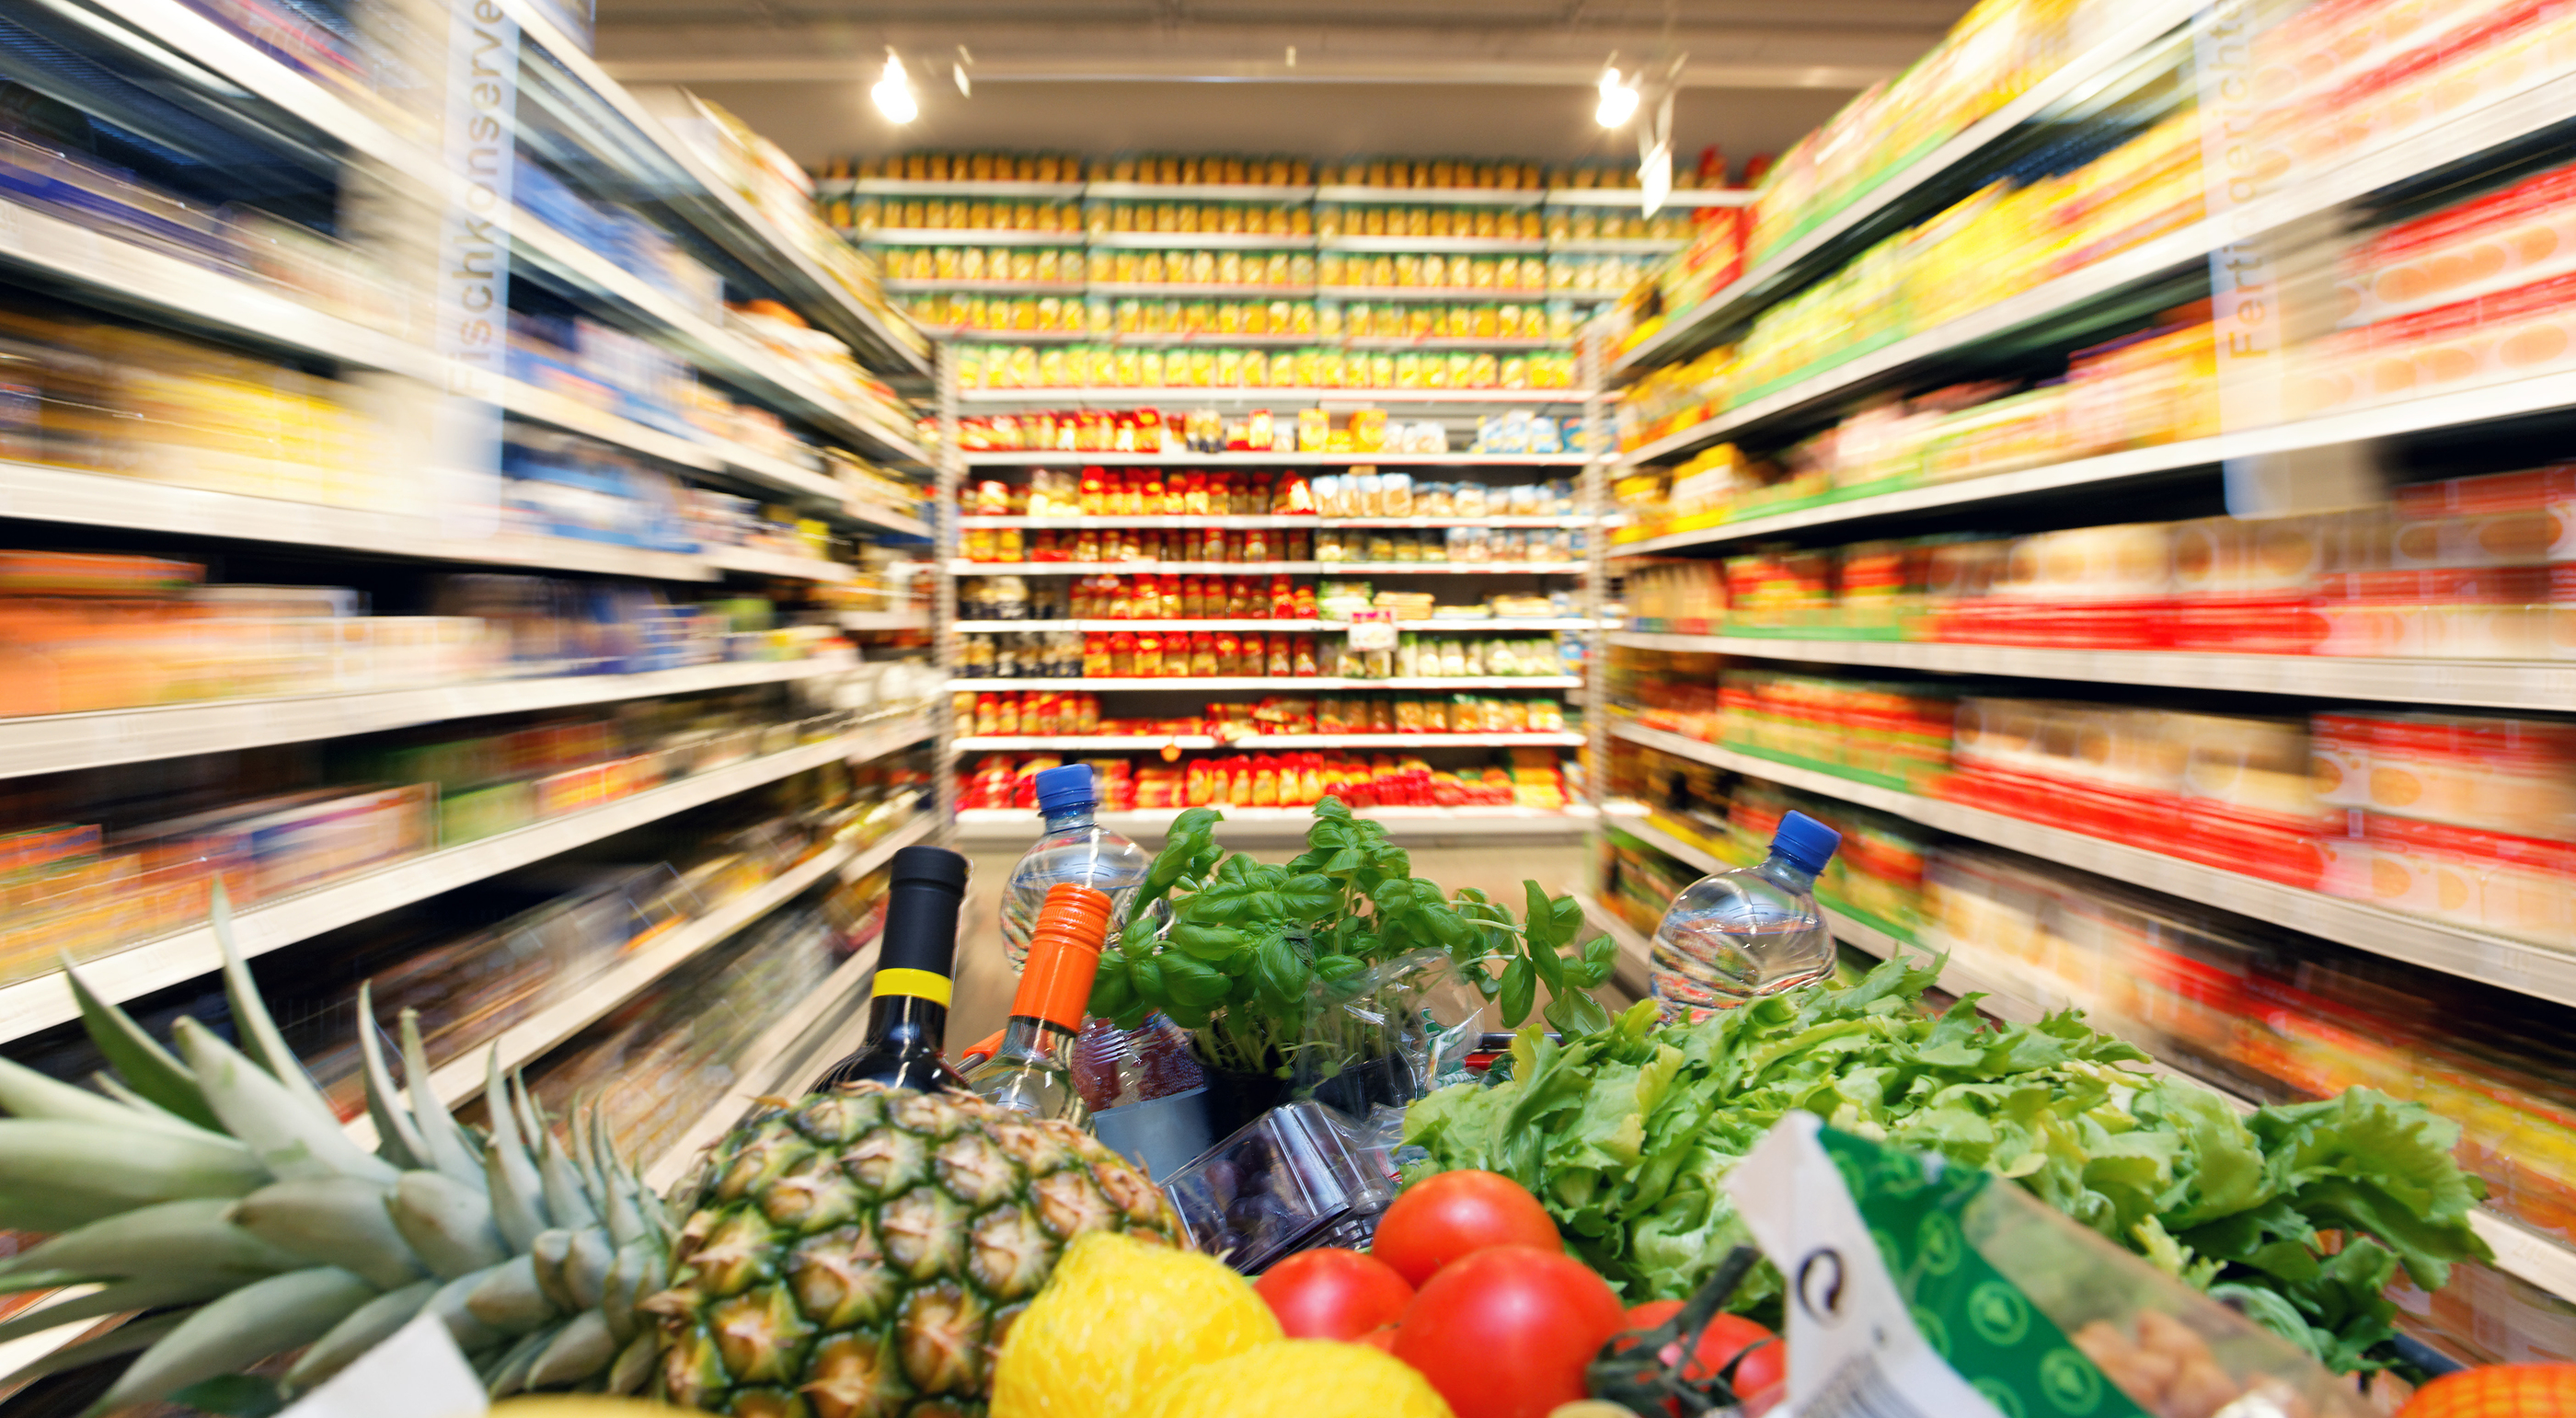 Έρευνα ΟΠΑ: Ο μισός μισθός πηγαίνει στο σούπερ μάρκετ – Το φταίξιμο στις πολυεθνικές